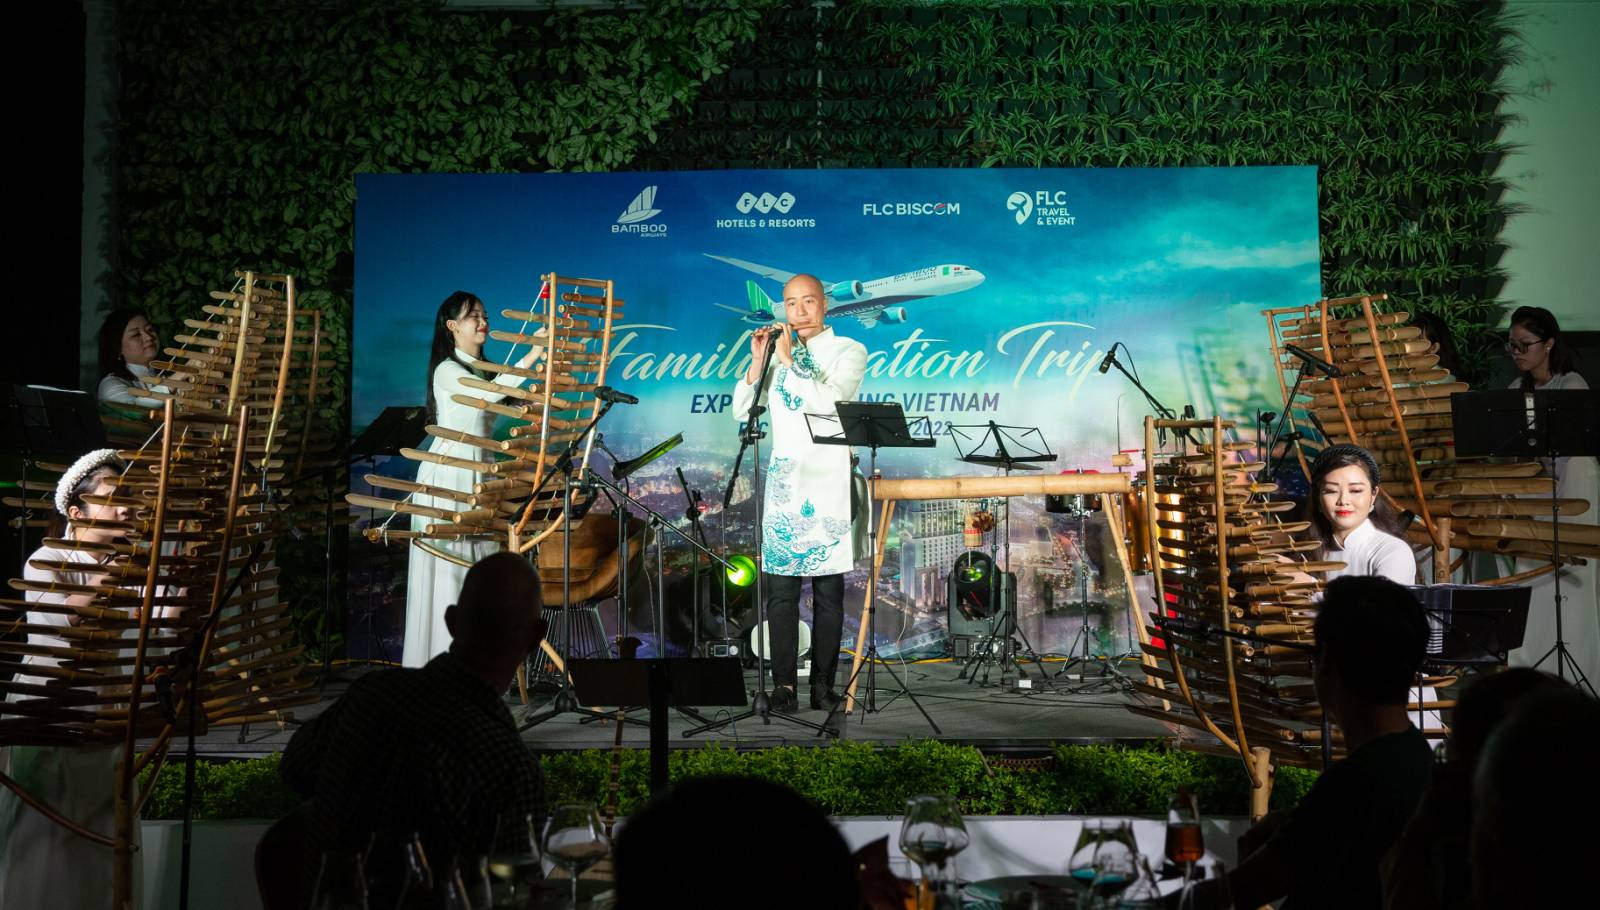 Đoàn du khách được trải nghiệm các đêm nhạc đậm nét văn hoá Việt Nam với dàn nhạc chế tác 100% bằng tre trúc.